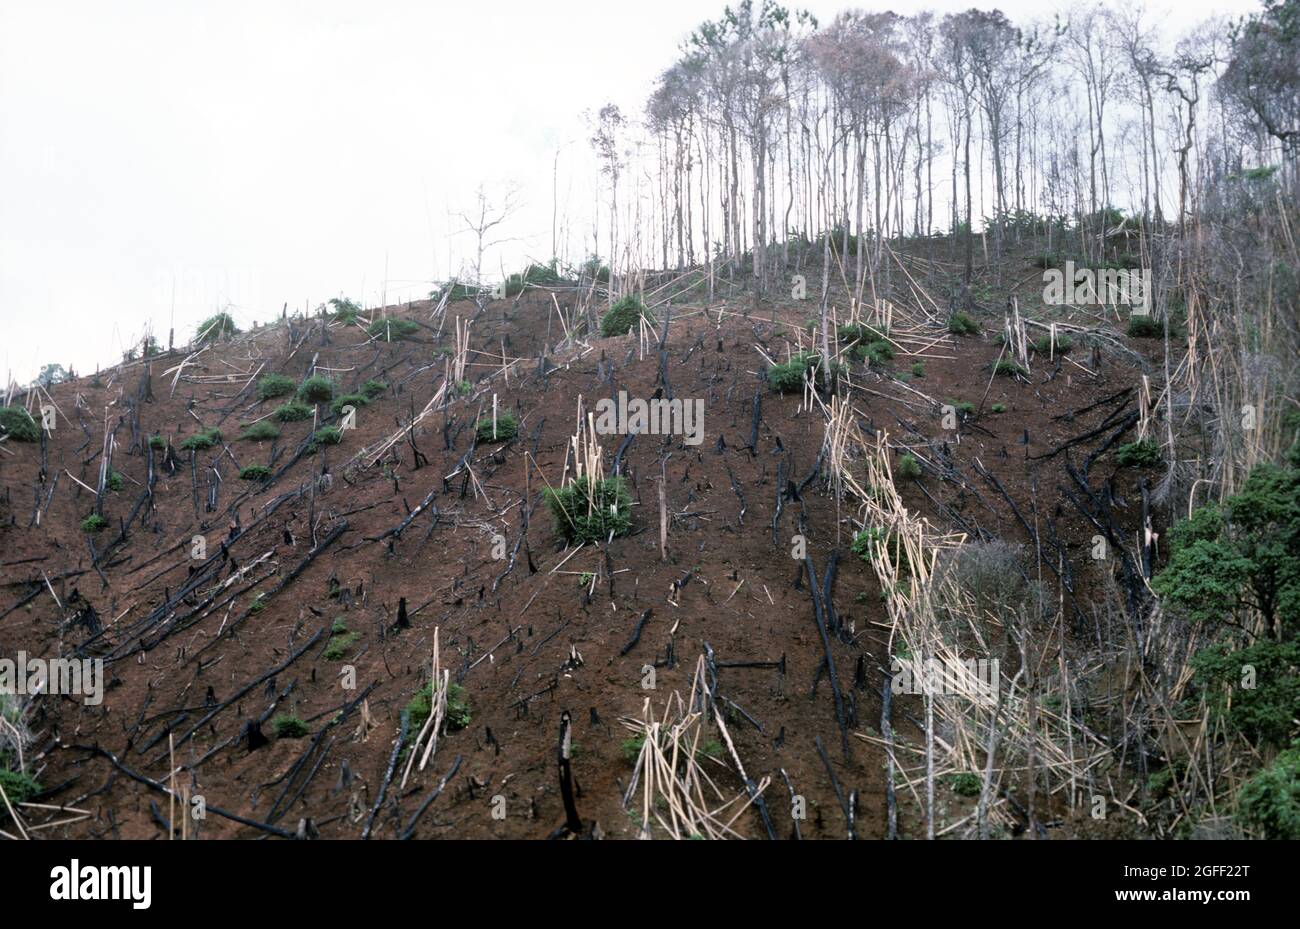 Deforestazione, abbattimento di alberi e bruciatura per liberare più terra per l'agricoltura in una zona già decimata, la Thailandia Foto Stock